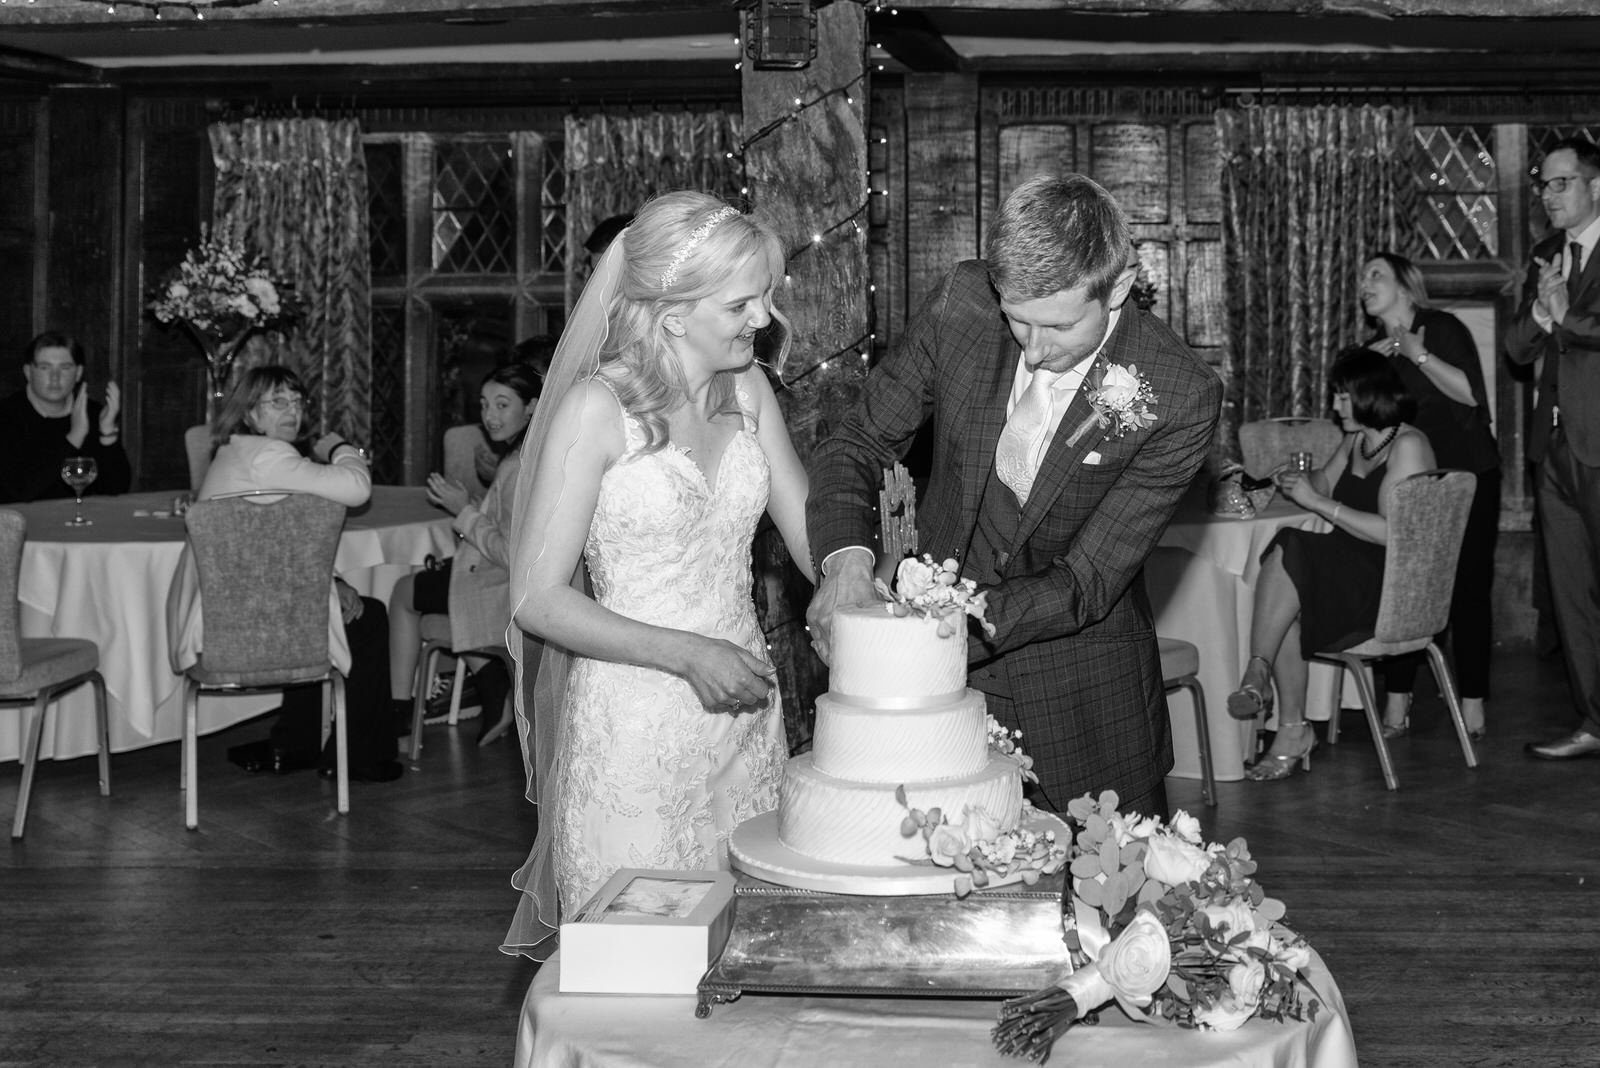 surrey-wedding-cake-cutting.jpg